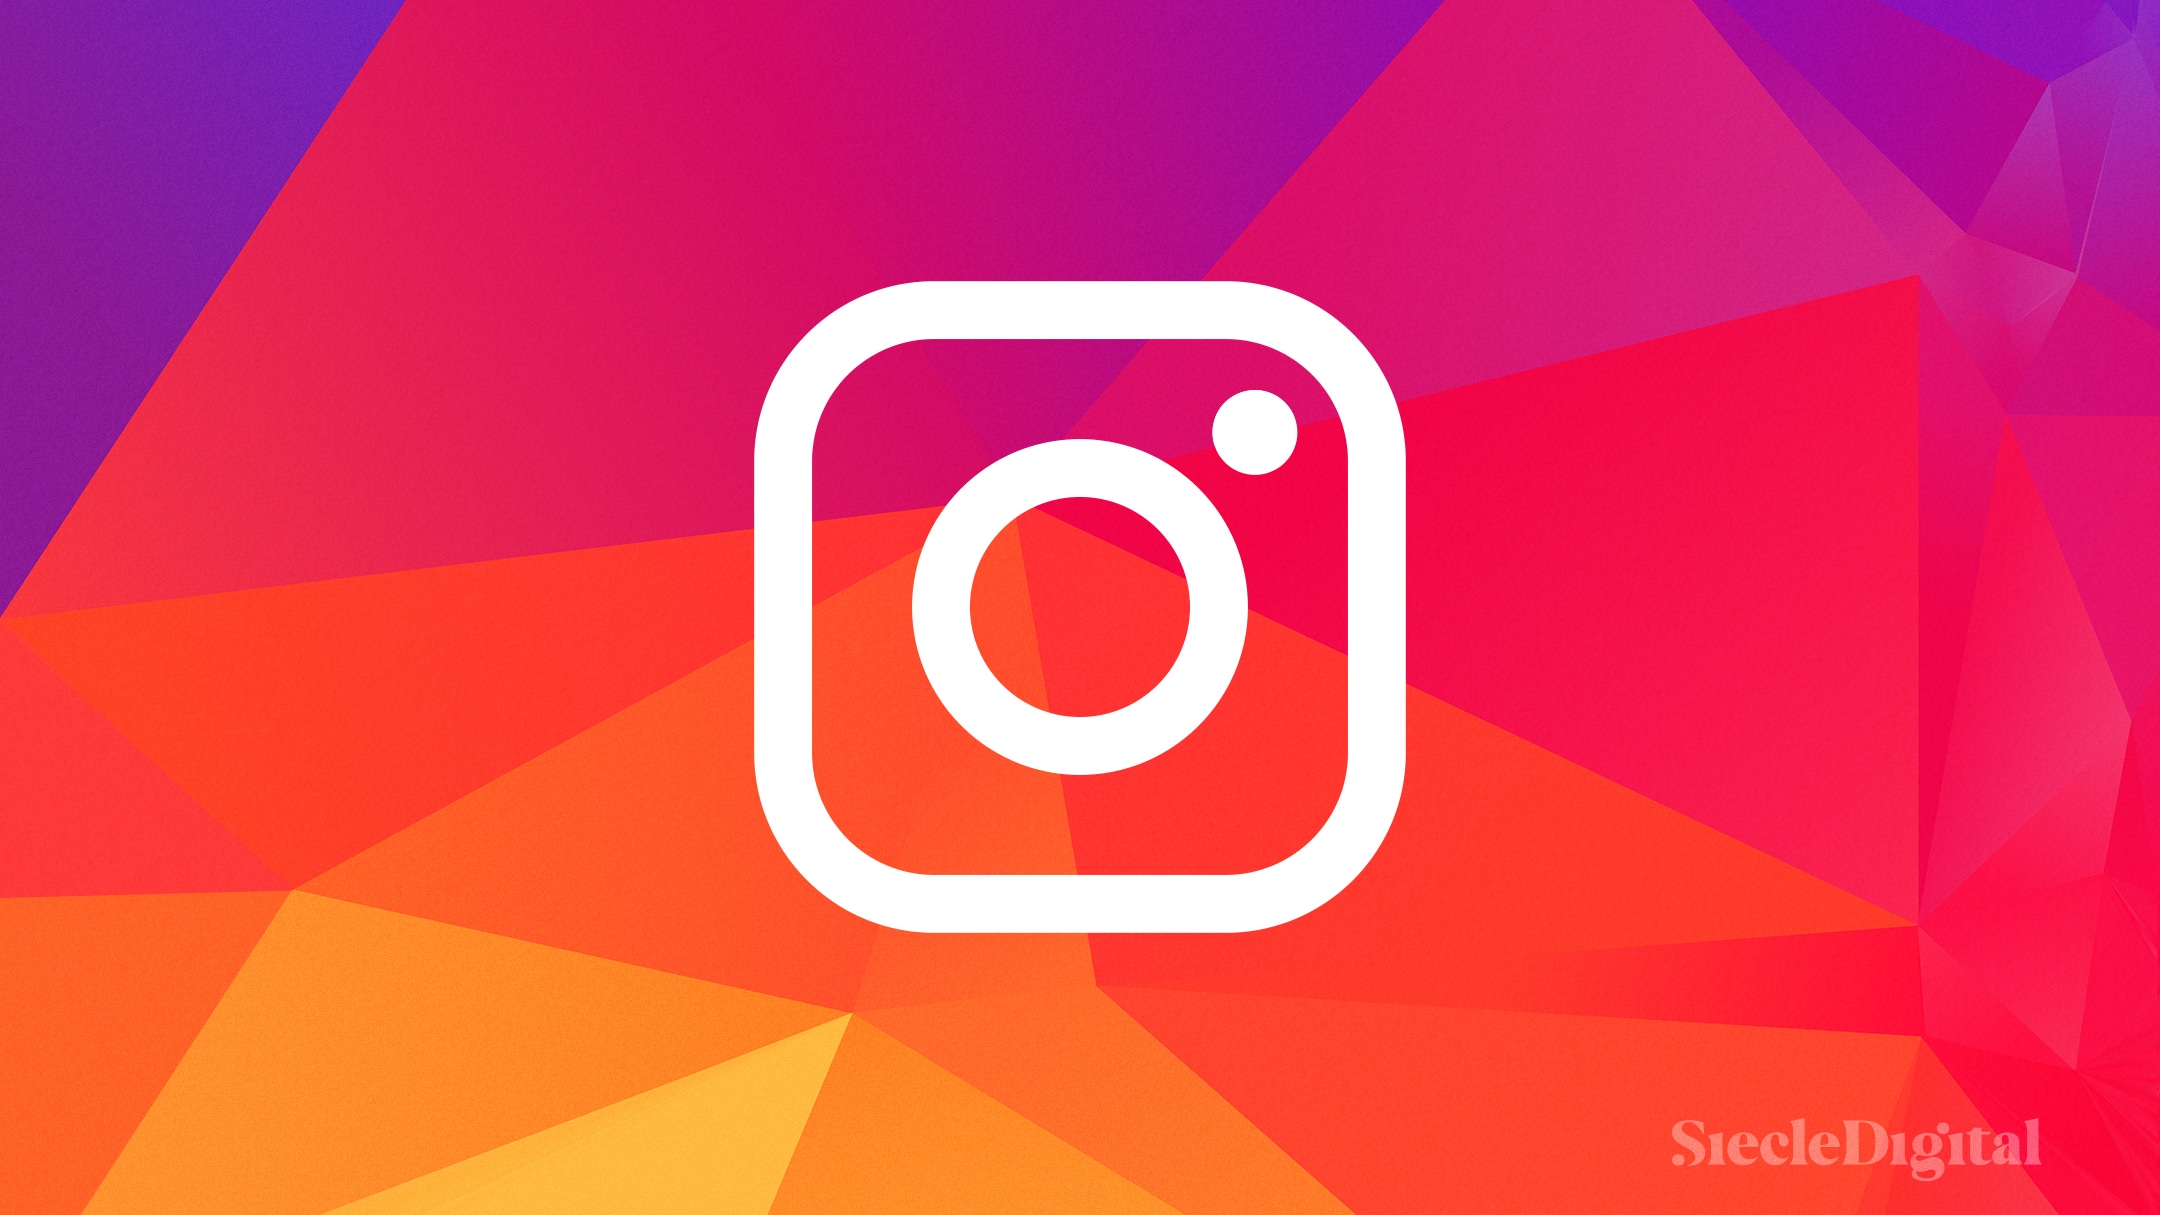 Un sticker remplacera les swipe up traditionnels sur les stories de l'application Instagram.